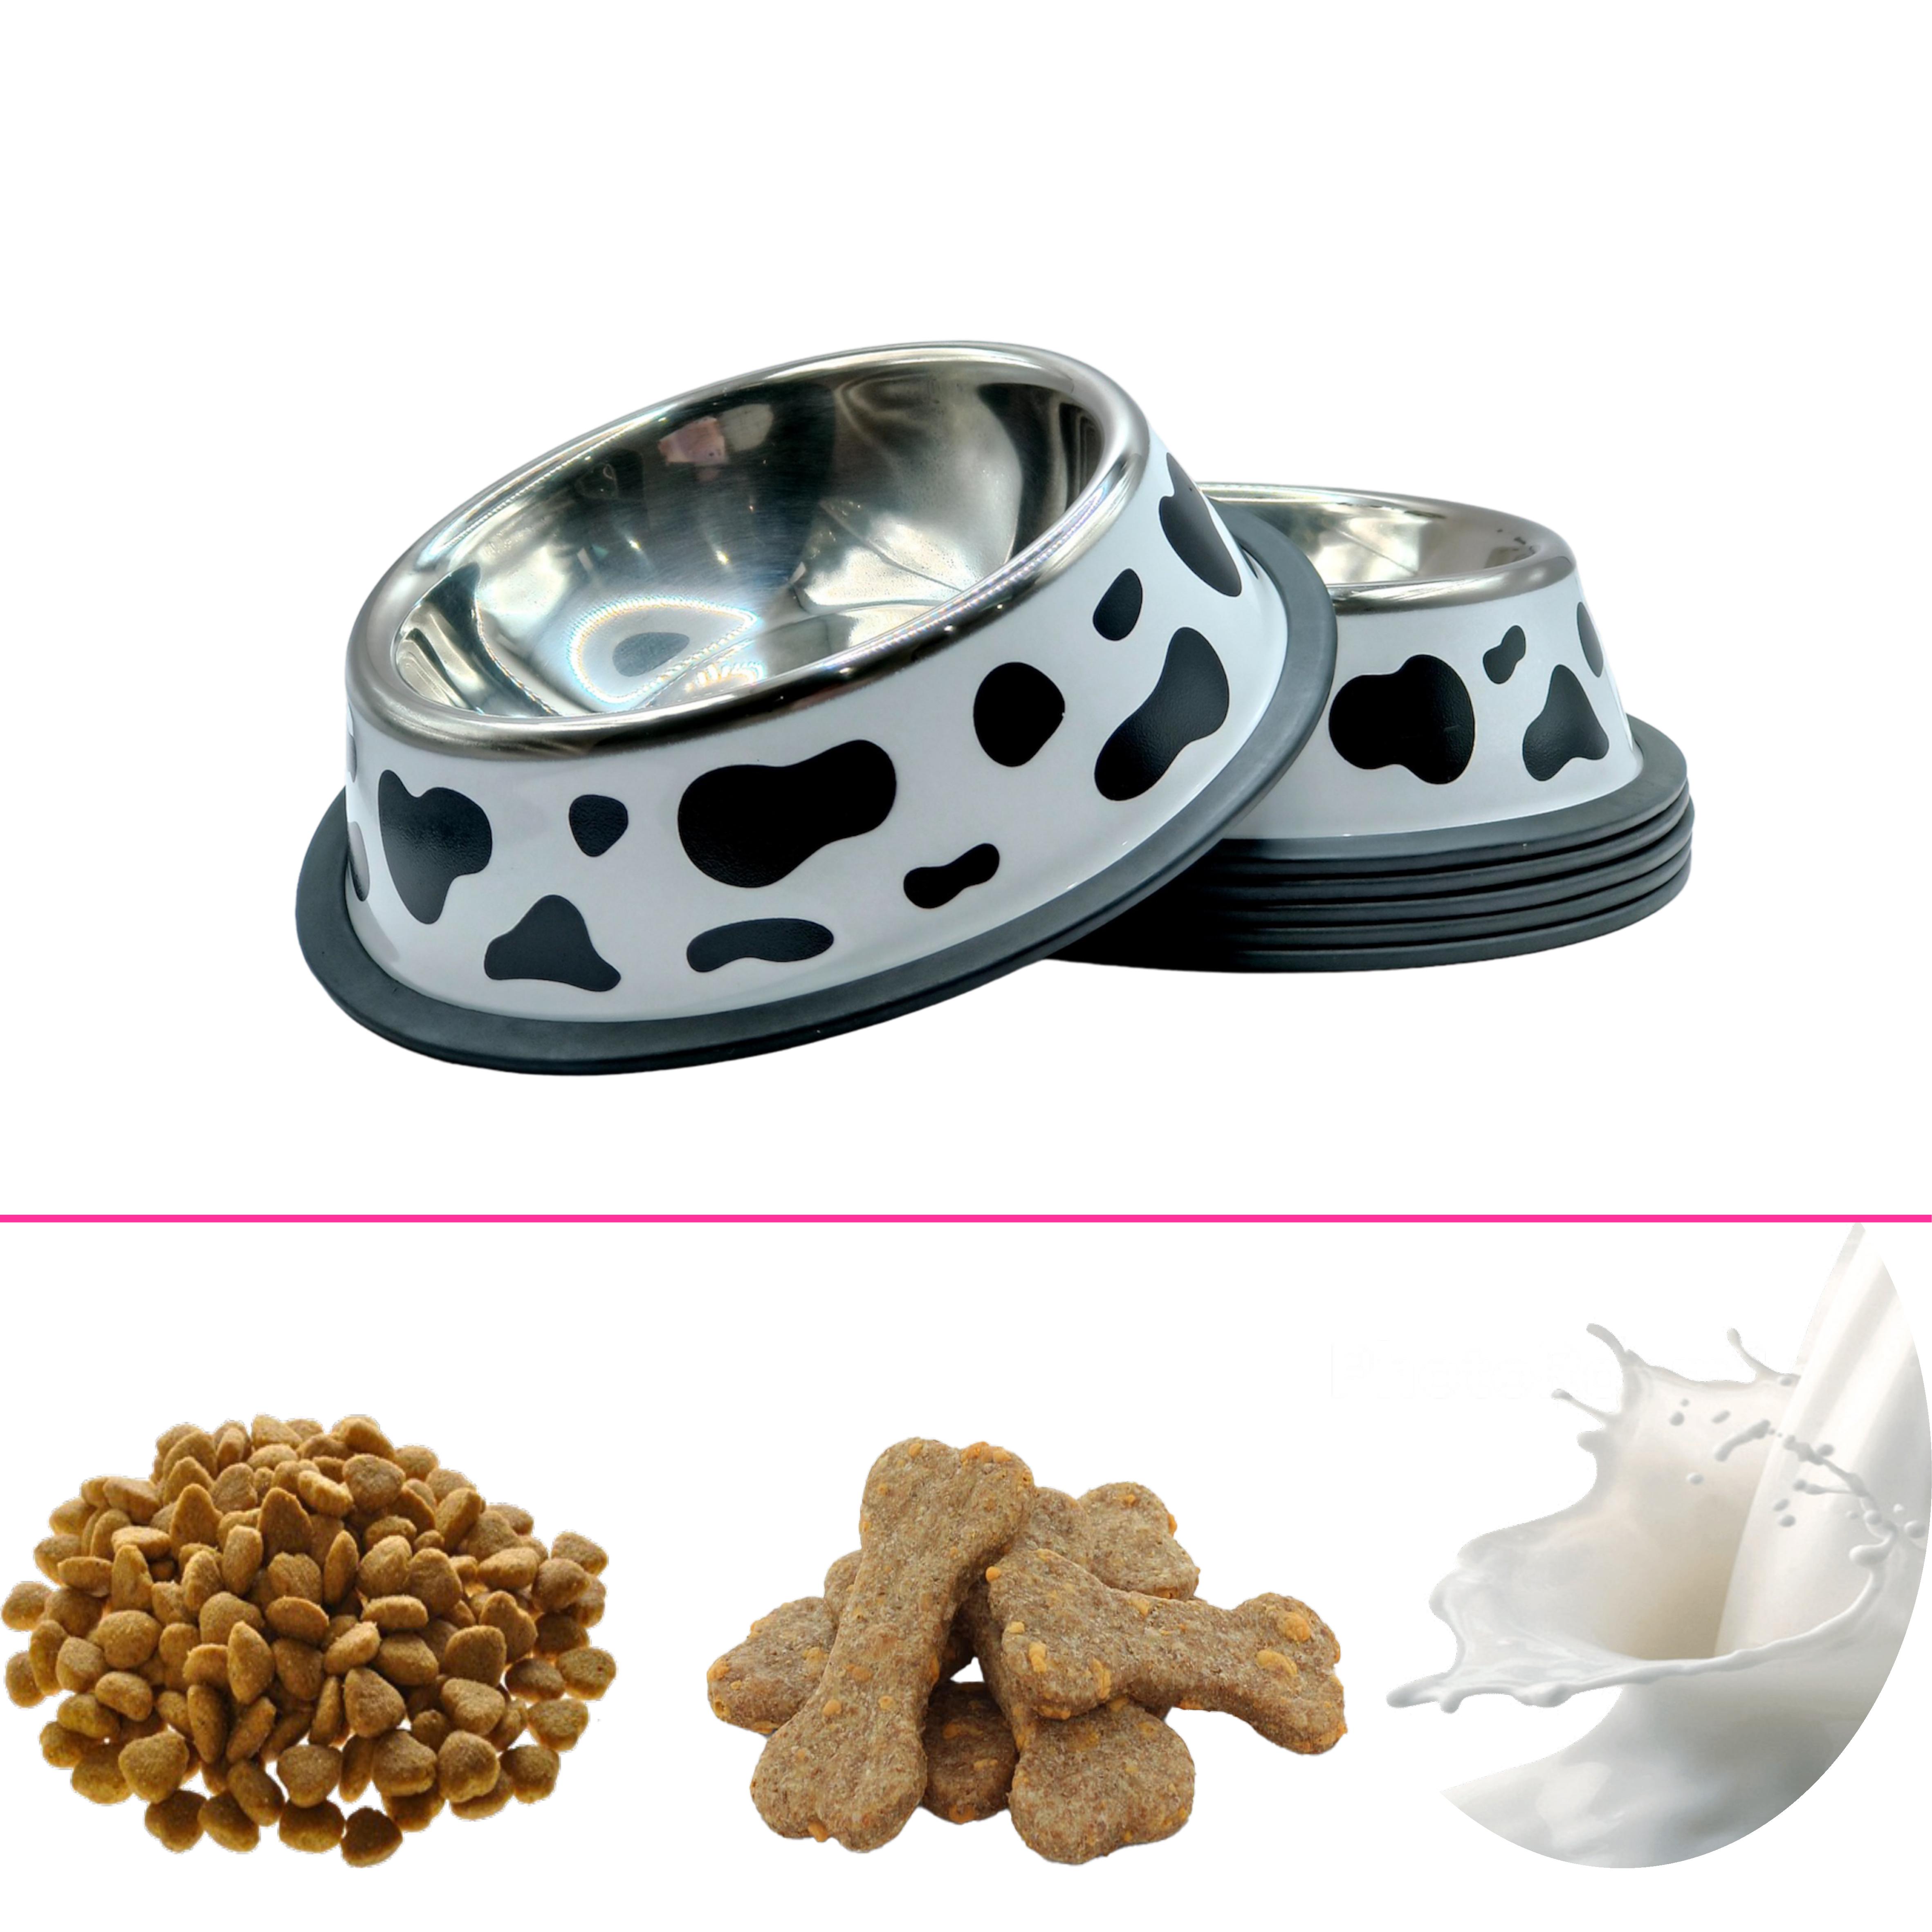 Bát ăn thú cưng, bát ăn chó mèo hình bò sữa, chất liệu inox an toàn sử dụng cho vật nuôi. Bát có 3 kích thước 18cm, 26cm, 34cm. Bát ăn size nhỏ 18cm